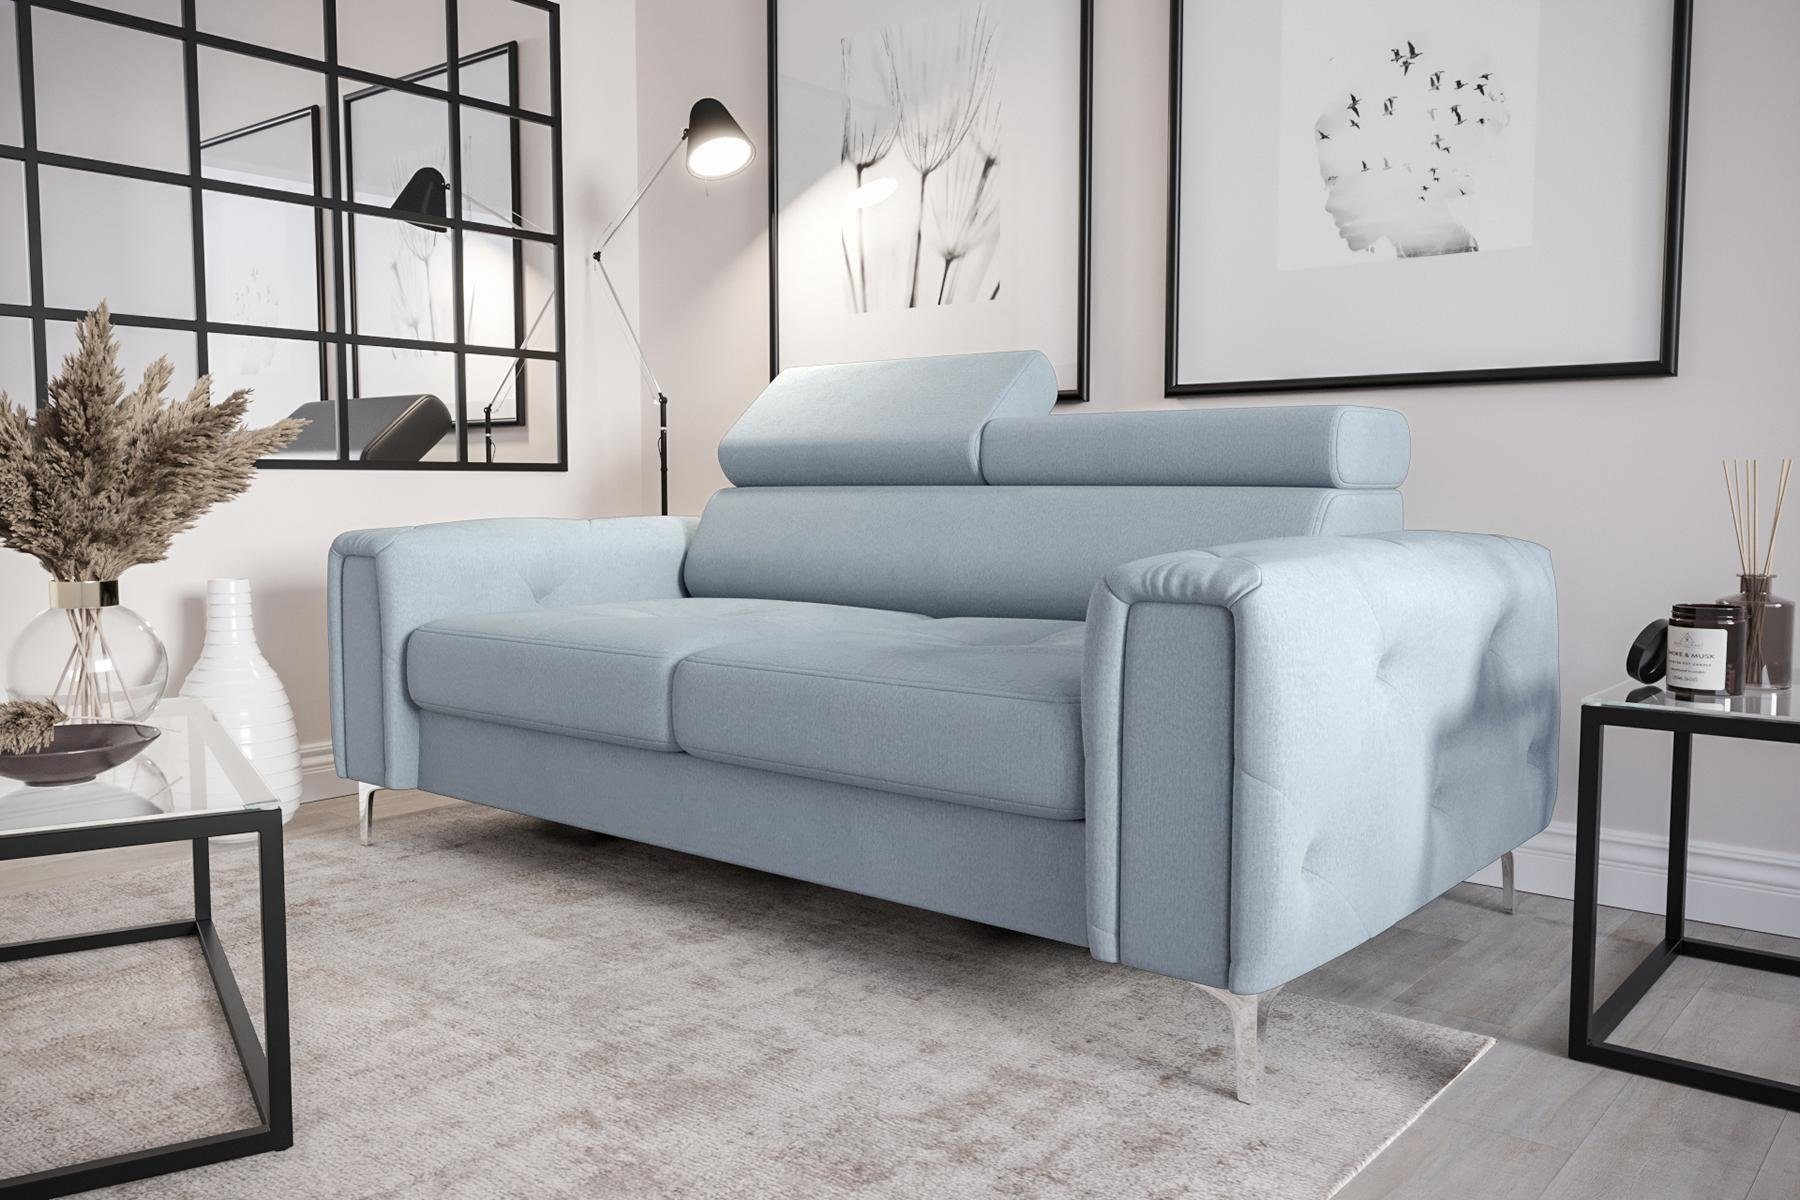 JVmoebel Sofa Designer 2-Sitzer Sofa Couchen Sitz, Blau Made in Europe | Couch Blau Blau Sofa | Möbel Luxus Polster